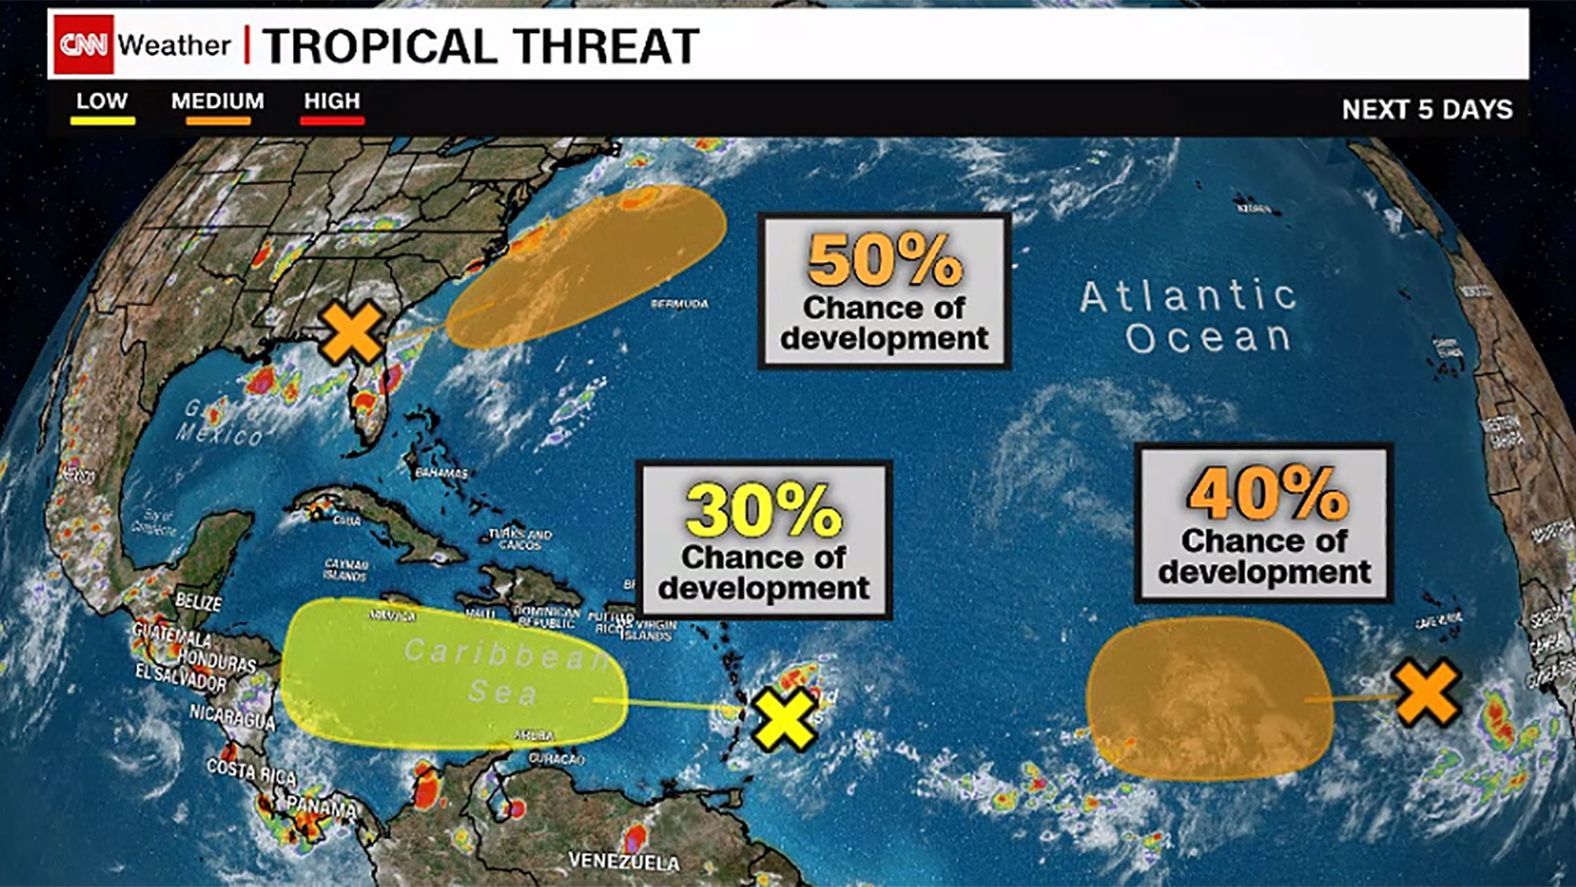 NHC's 5-Day Atlantic Hurricane Outlook